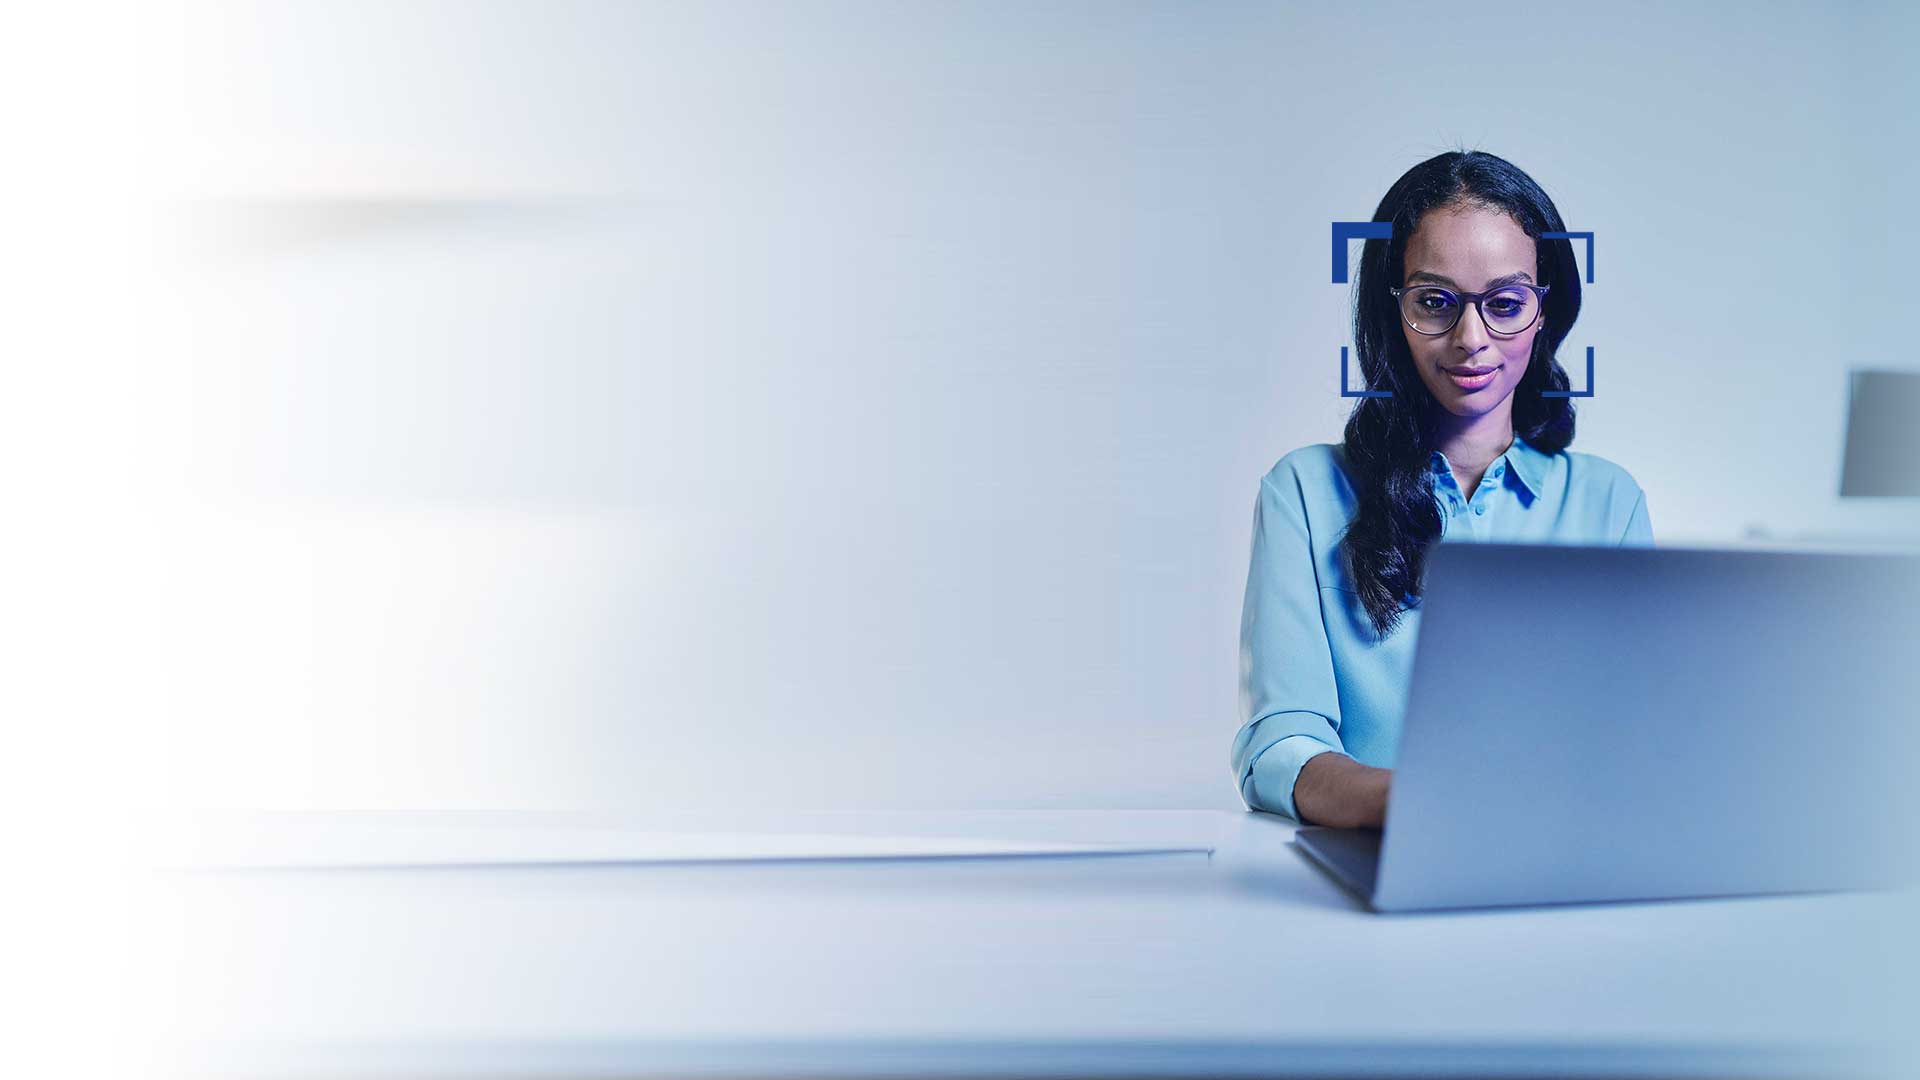 Vrouw met zwart haar en een bril kijkt met een lach op haar gezicht naar een laptop